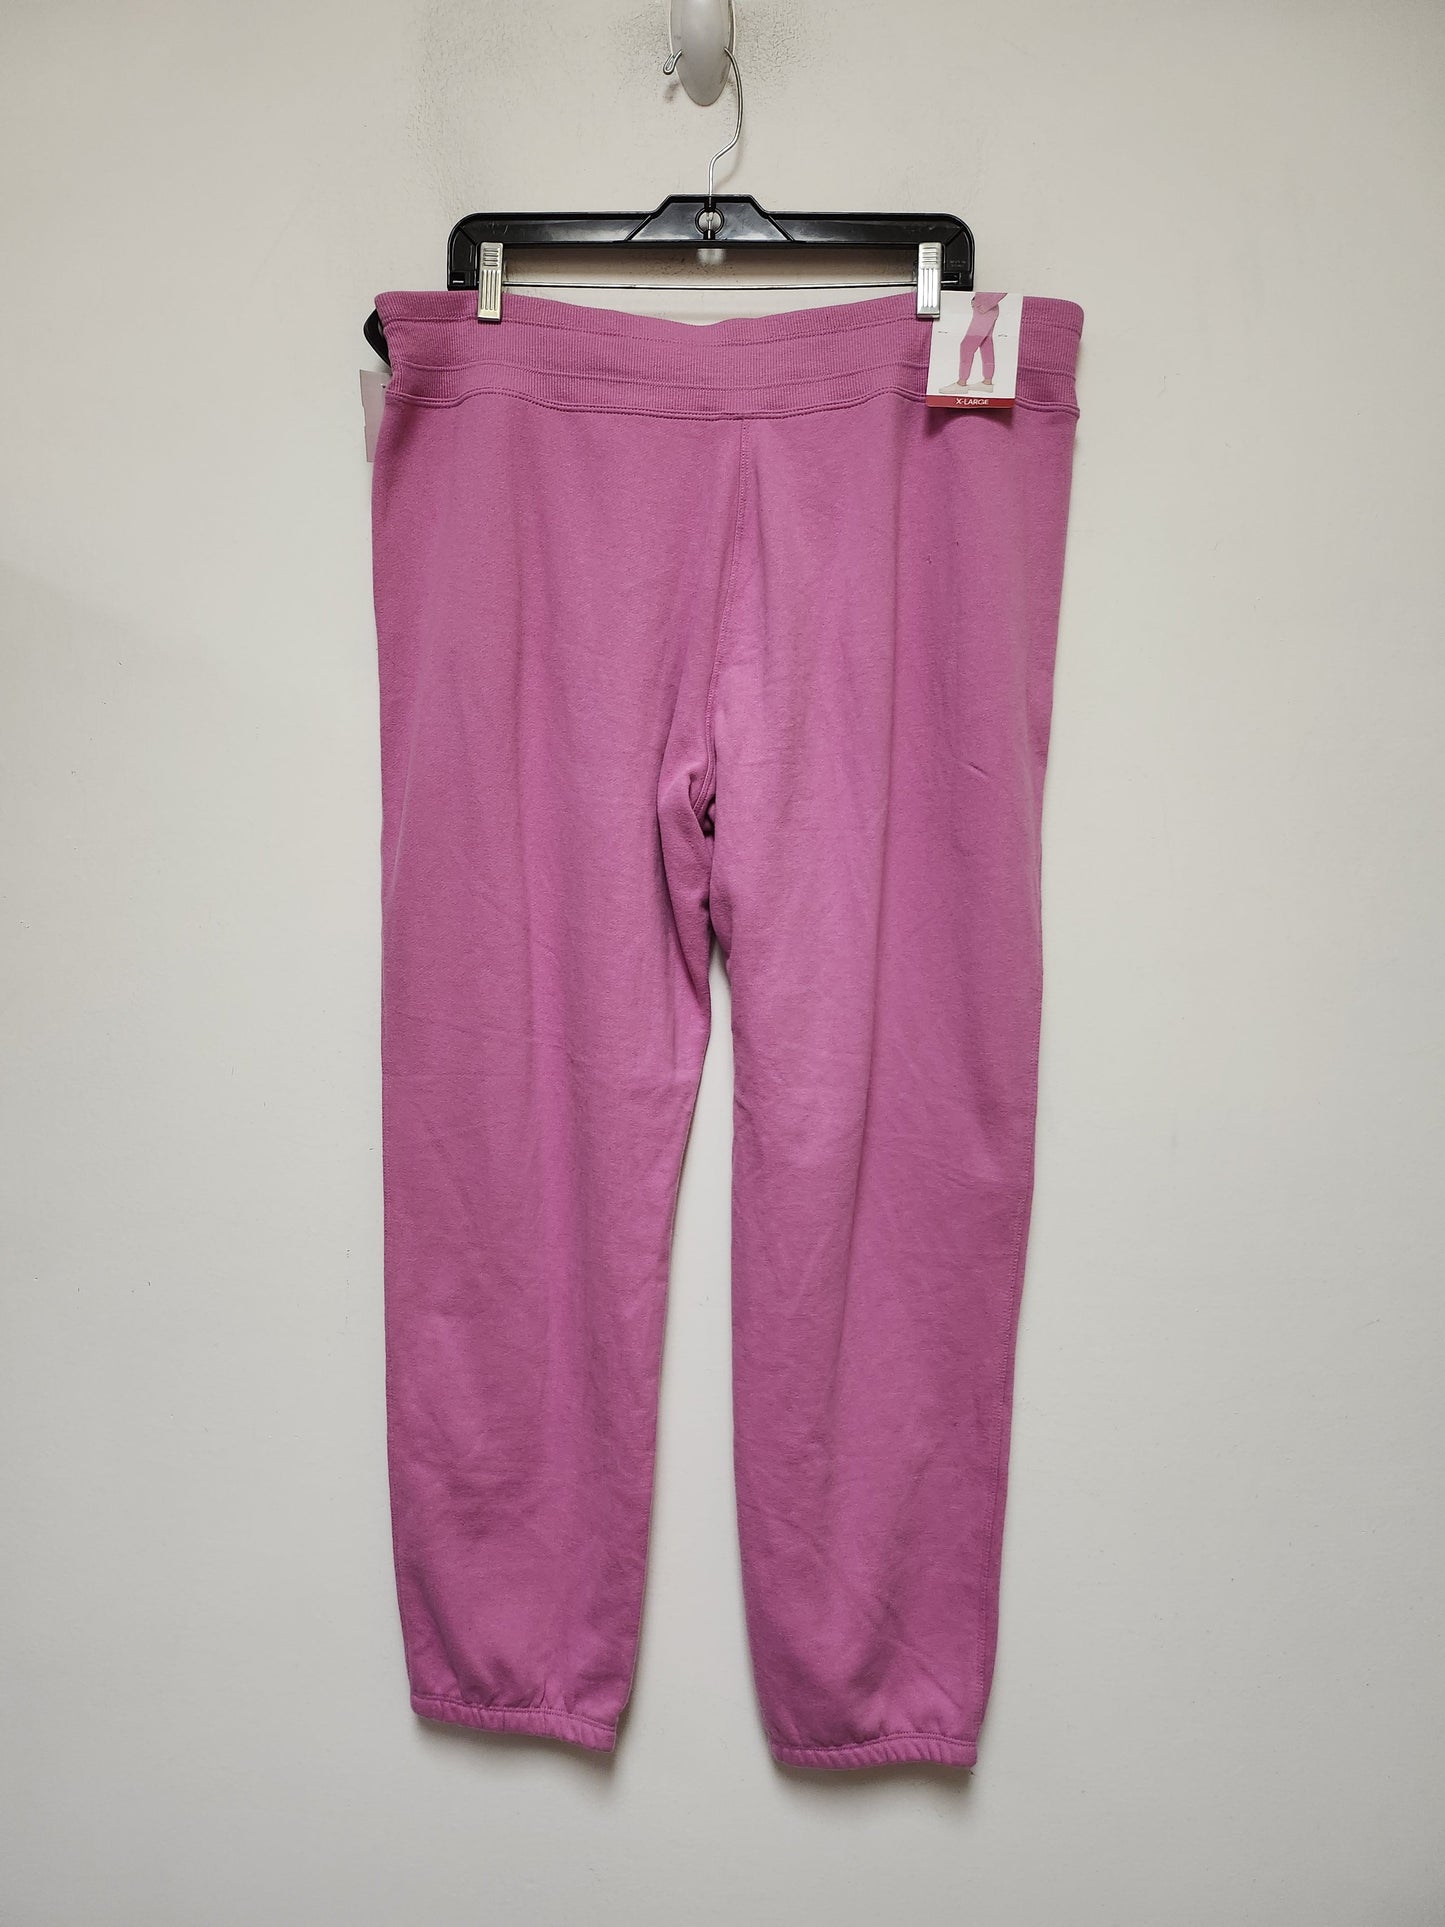 Purple Athletic Pants Calvin Klein, Size Xl